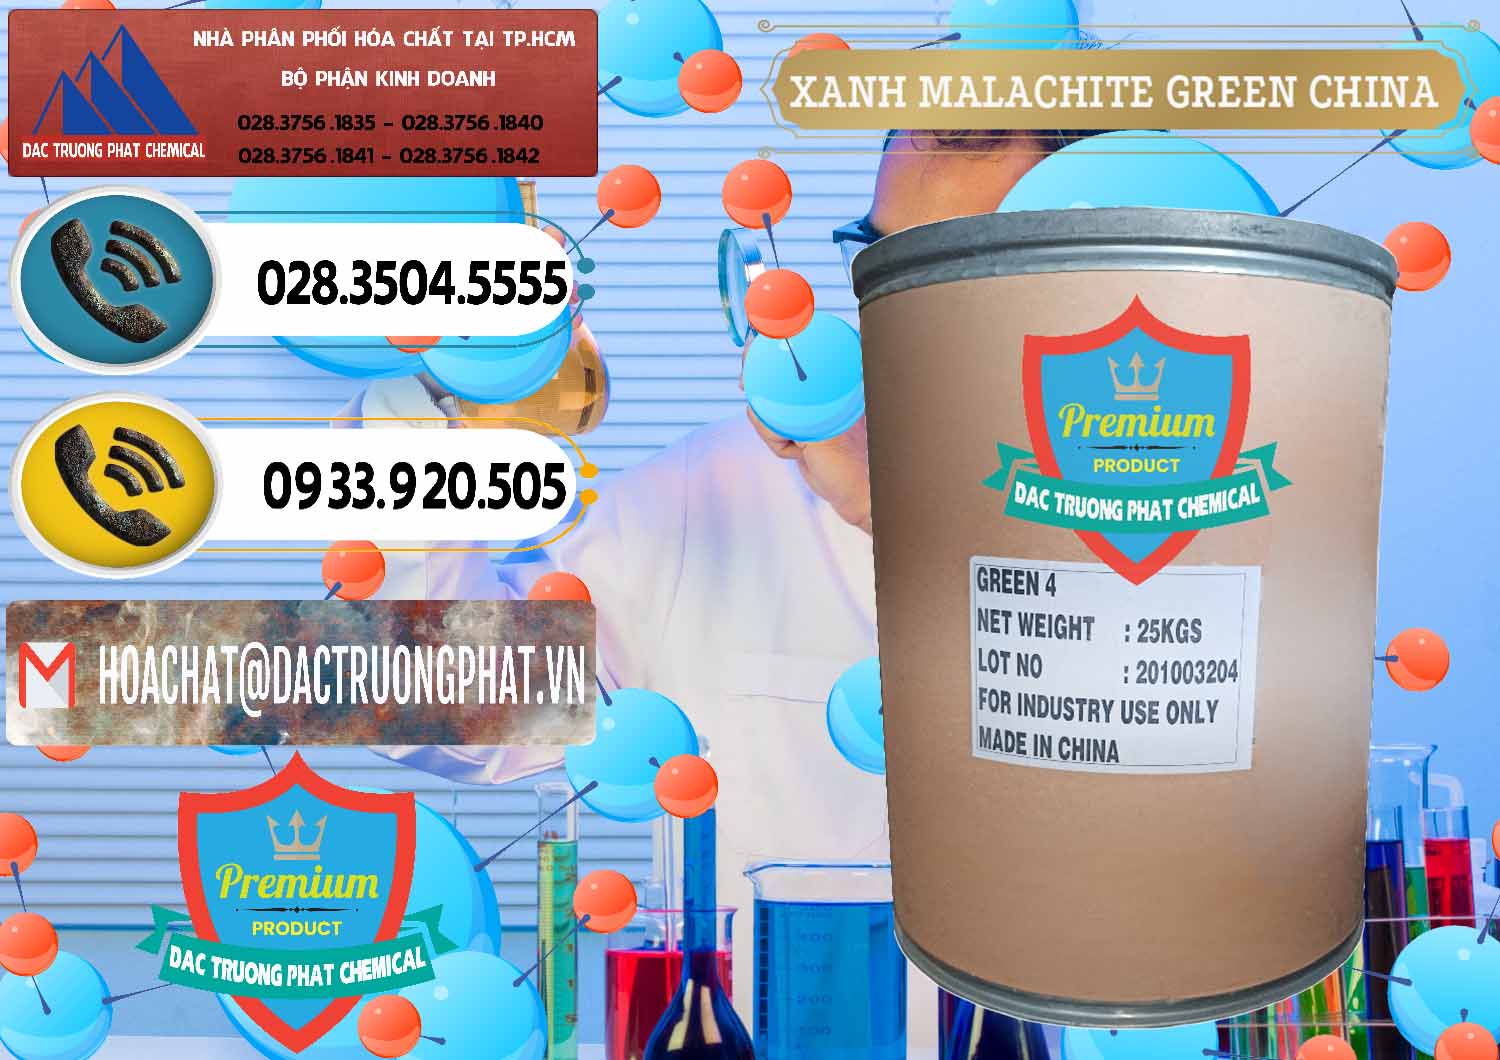 Nơi cung ứng - bán Xanh Malachite Green Trung Quốc China - 0325 - Công ty cung ứng ( phân phối ) hóa chất tại TP.HCM - hoachatdetnhuom.vn